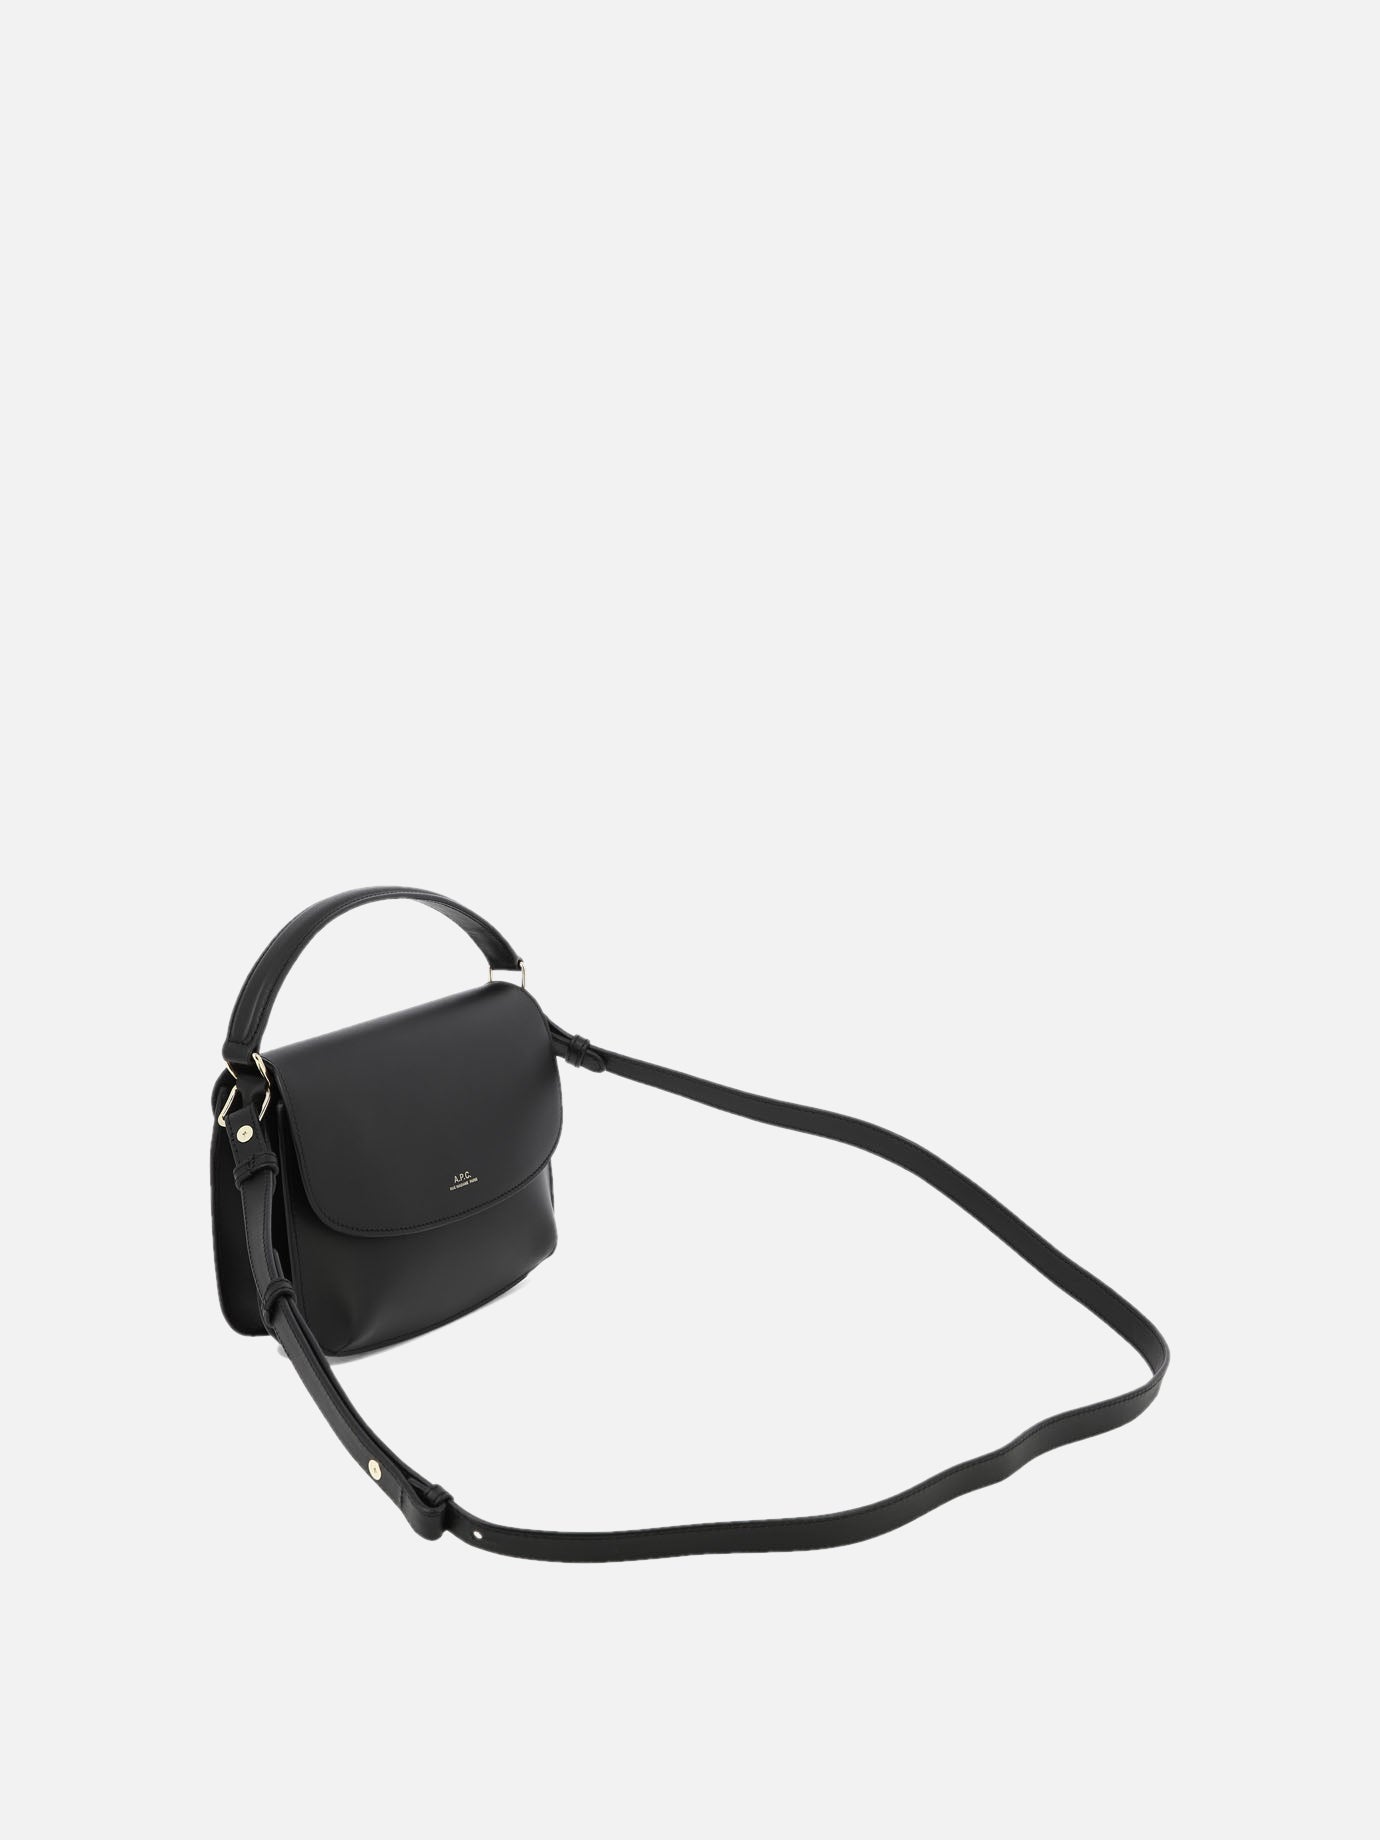 "Sarah Mini" shoulder bag